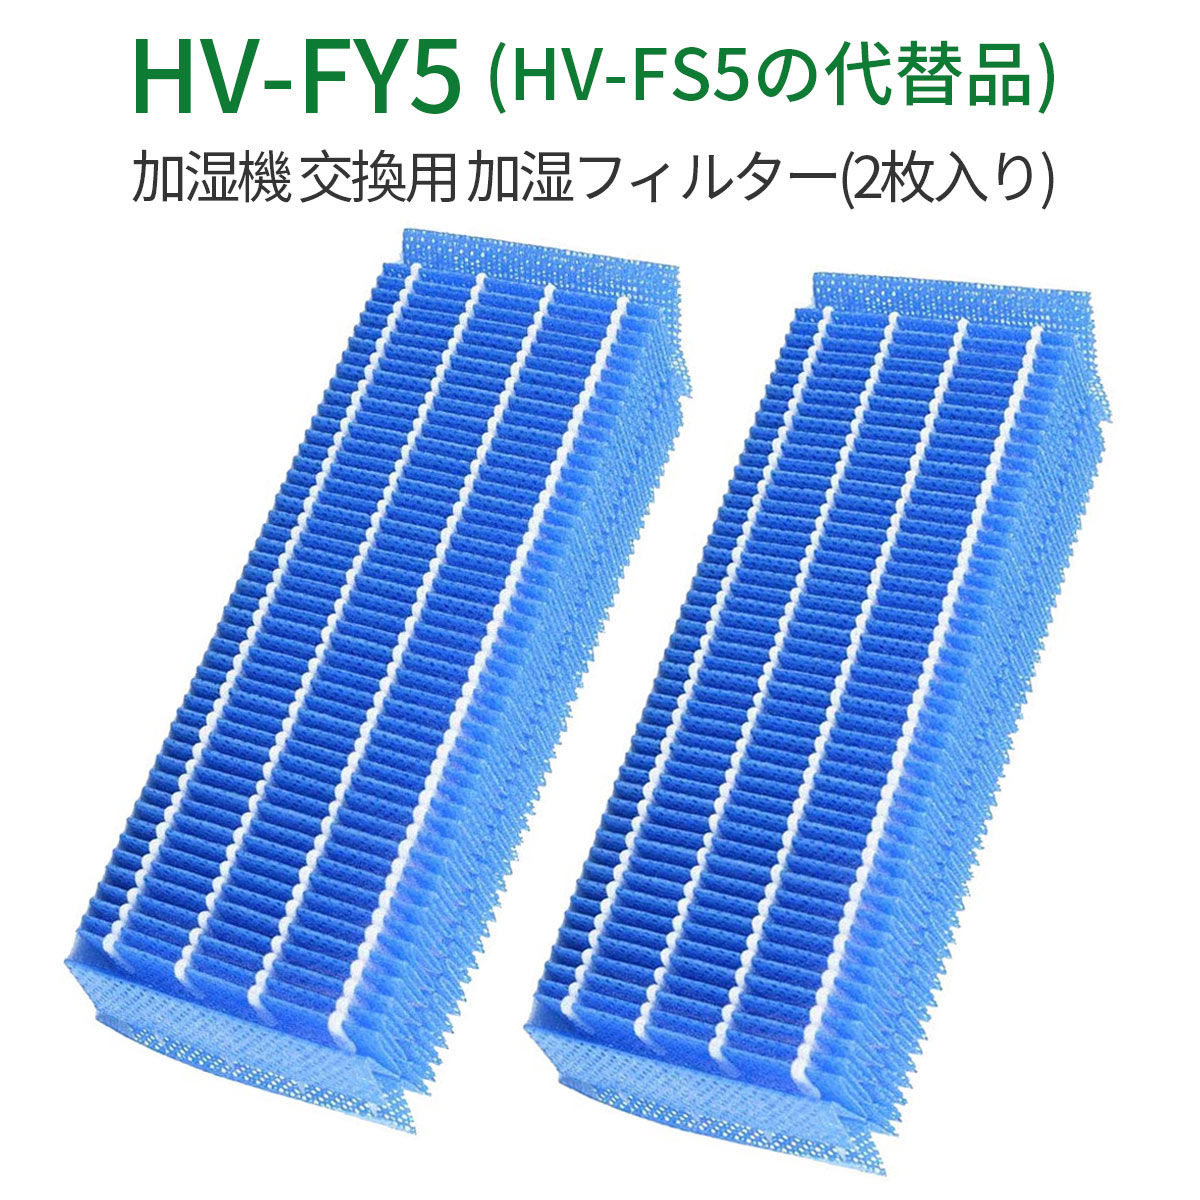 加湿フィルター hv-fy5 加湿器 フィルター HV-FY5 (HV-FS5の同等品) シャープ 加湿機用 交換フィルター 「互換品/2枚入り」